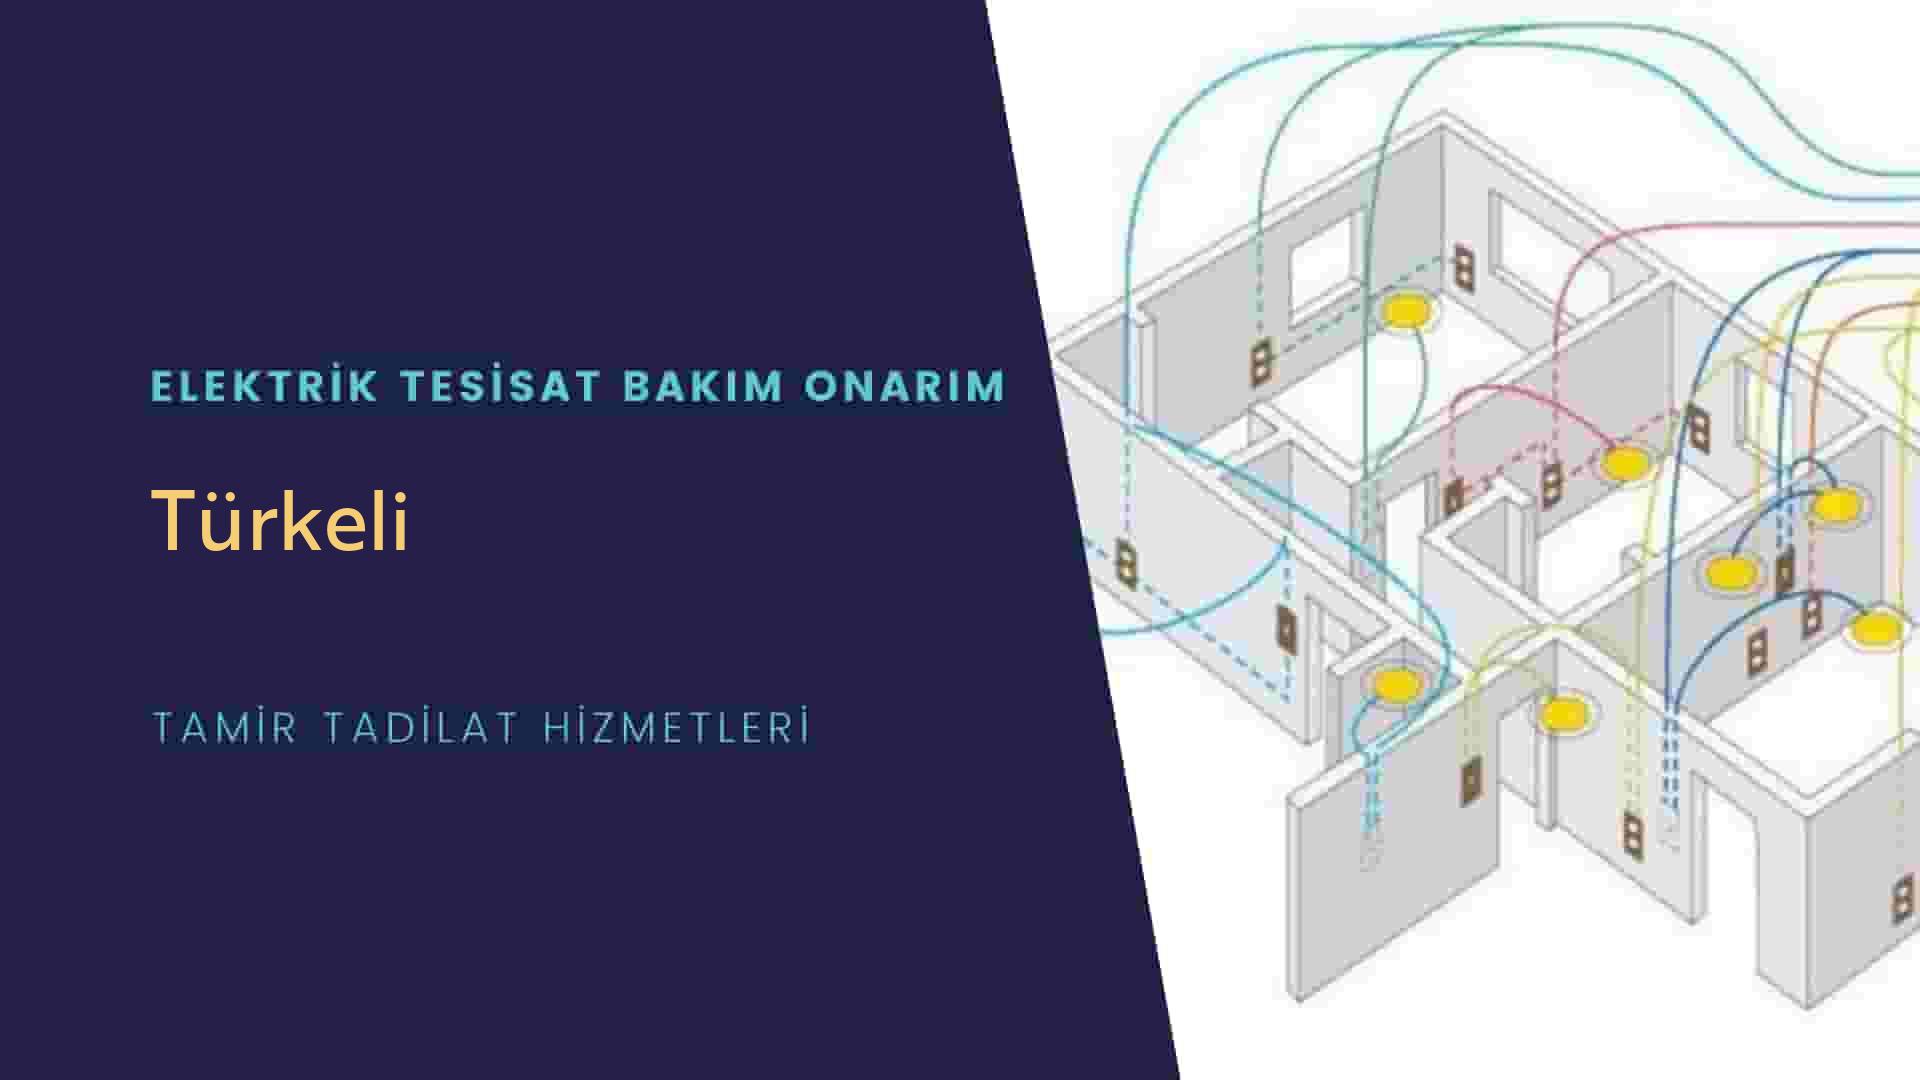 Türkeli'de elektrik tesisatı ustalarımı arıyorsunuz doğru adrestenizi Türkeli elektrik tesisatı ustalarımız 7/24 sizlere hizmet vermekten mutluluk duyar.